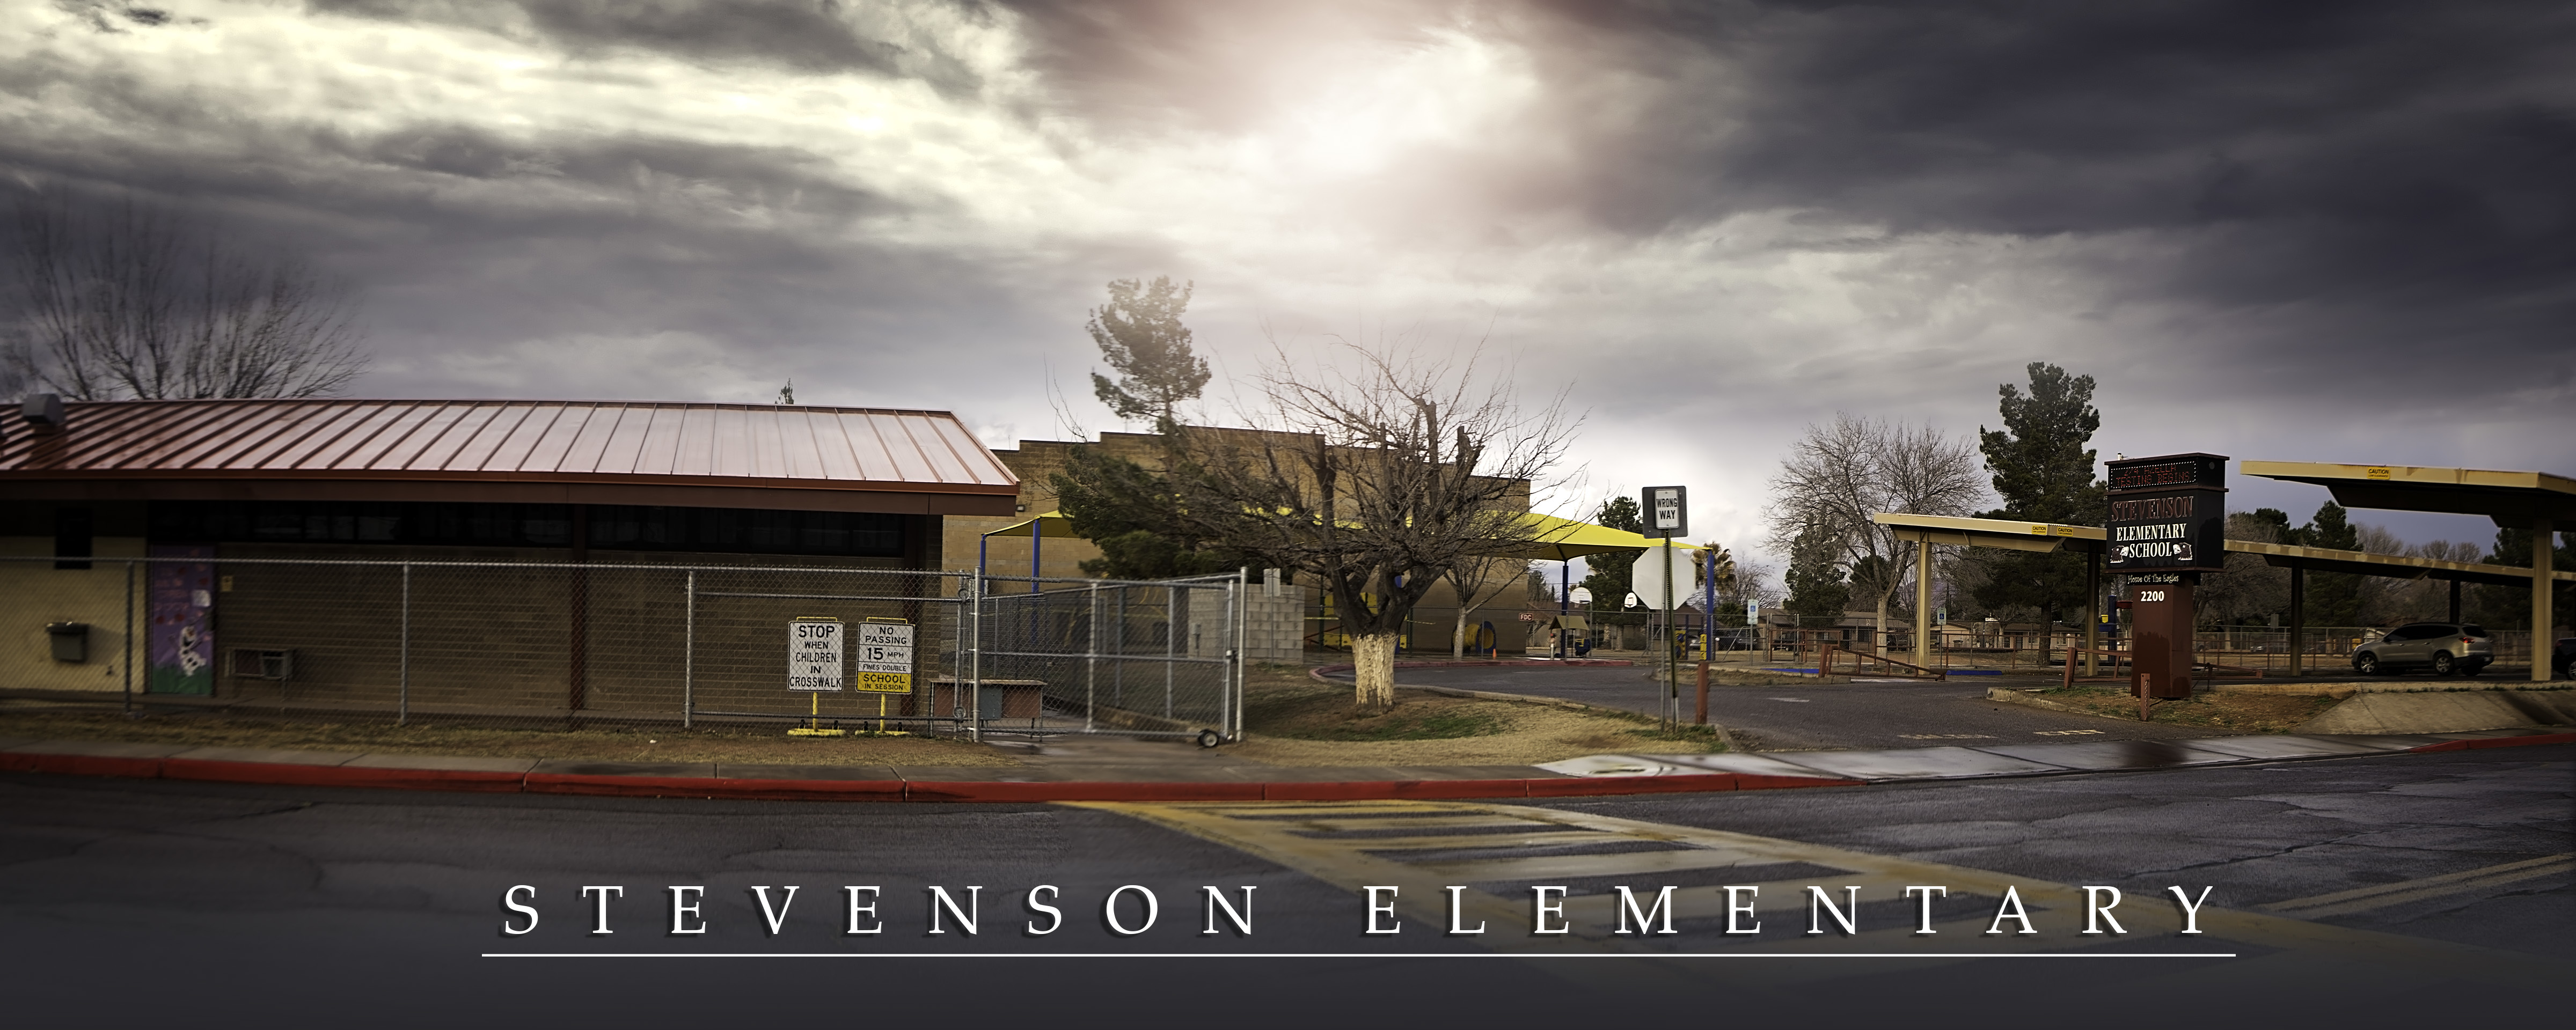 Stevenson Elementary School